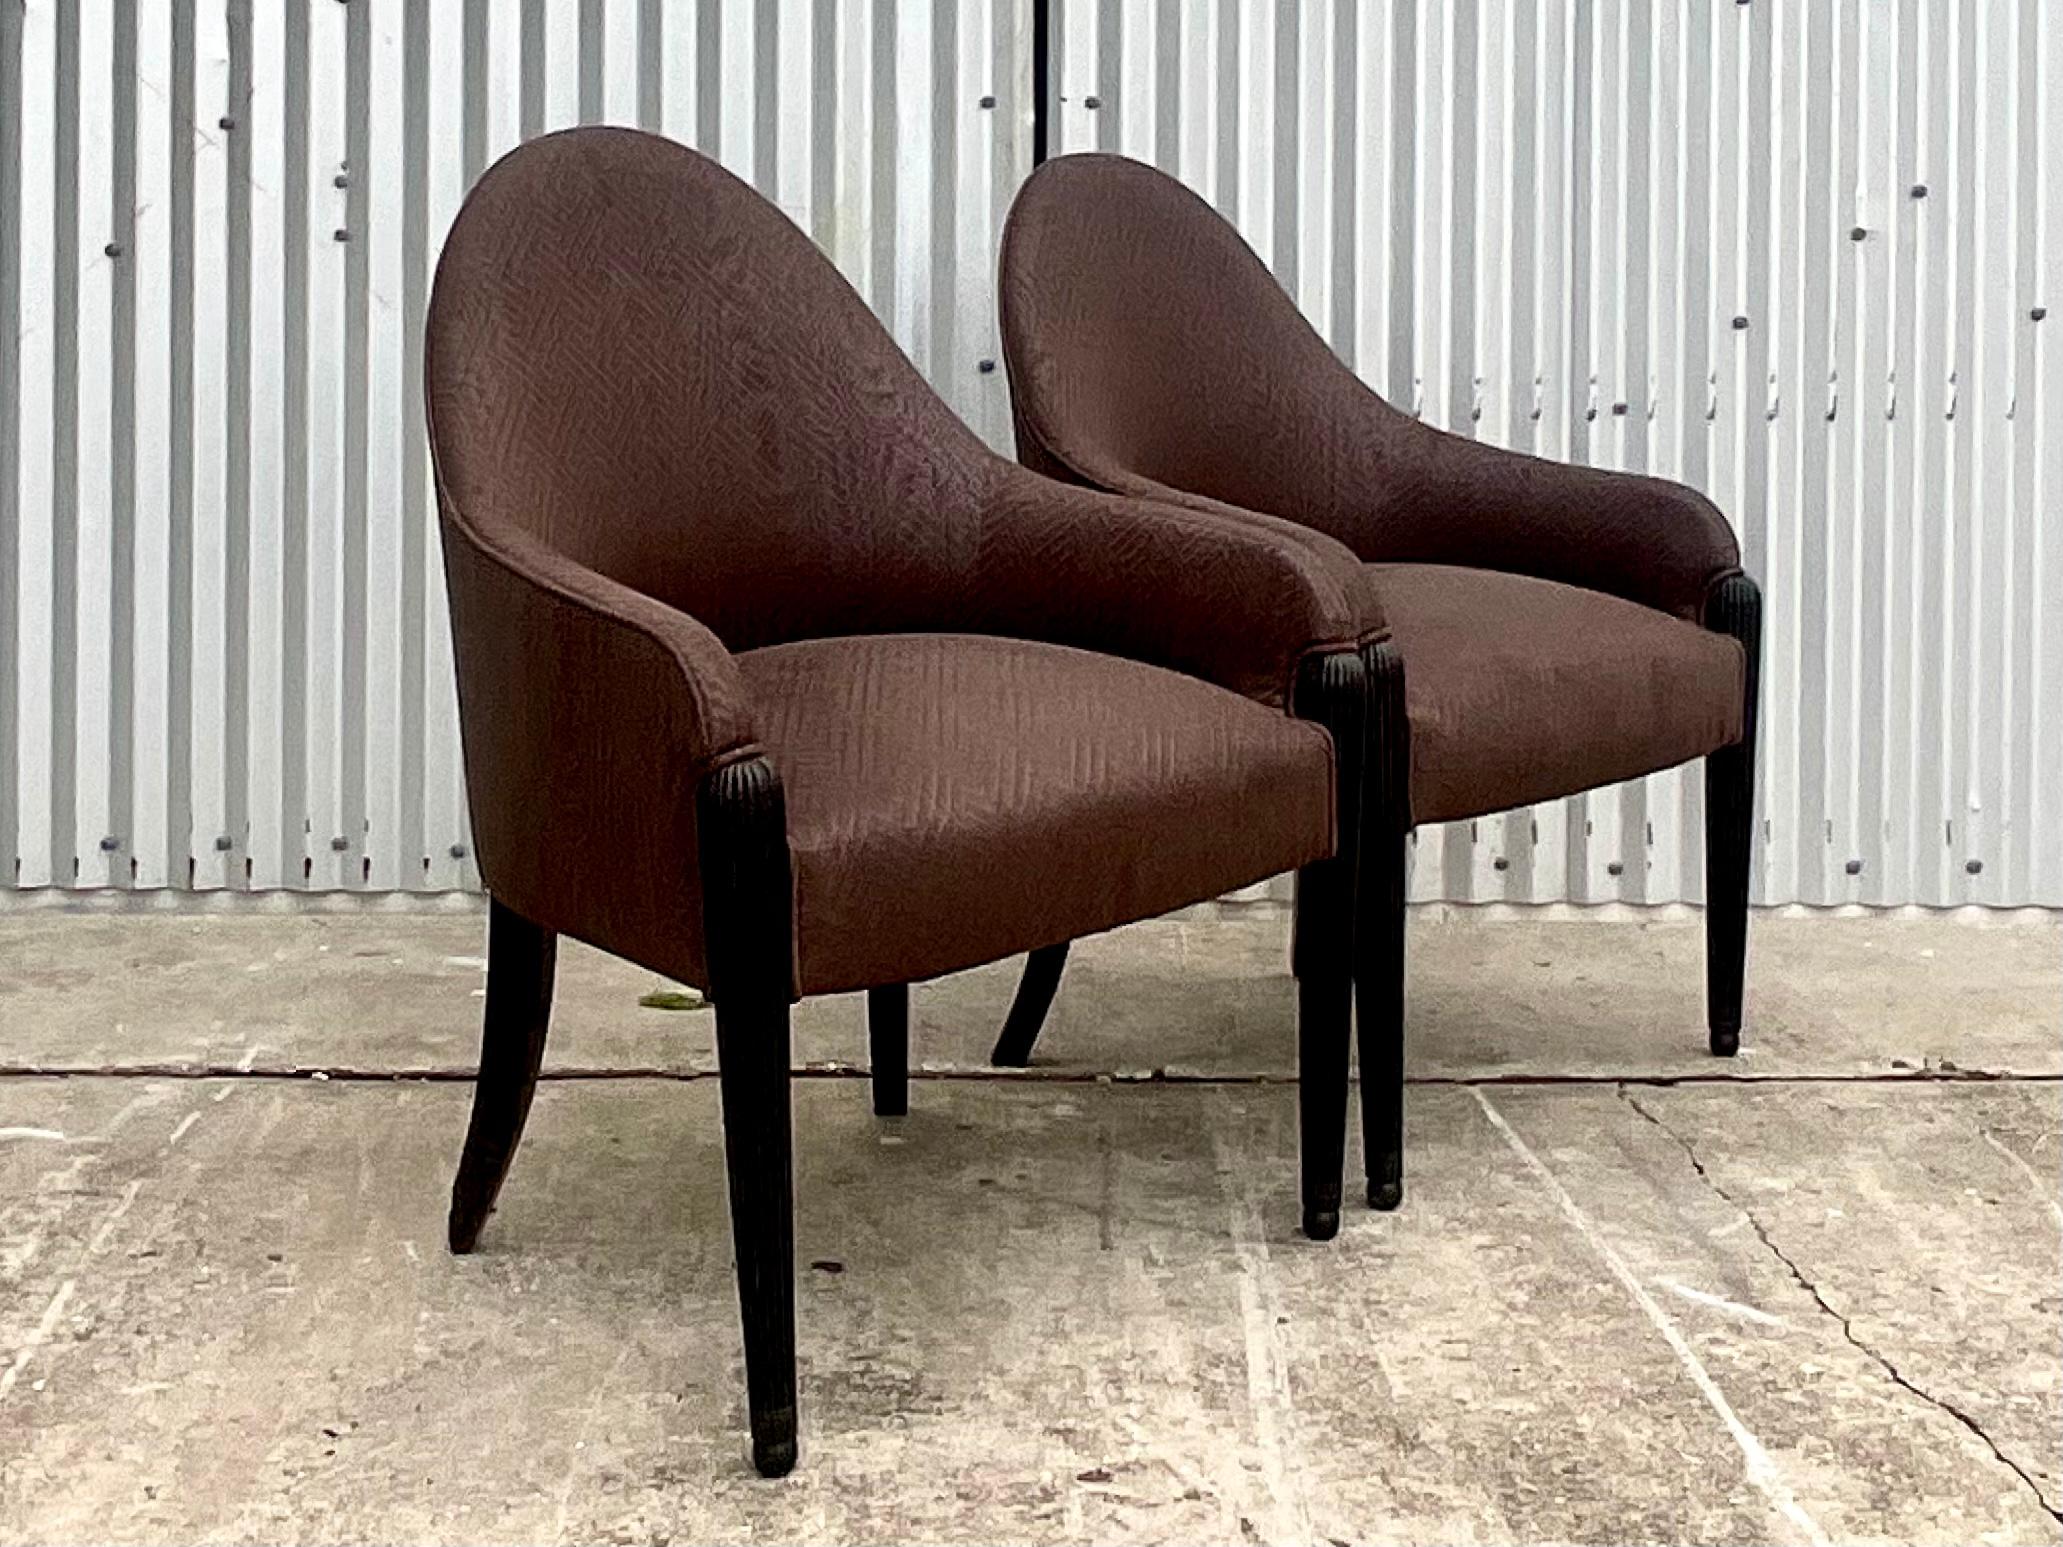 Fantastique paire de chaises latérales brunes matelassées vintage. Un magnifique dossier haut et incliné confère à ces chaises un look postmoderne distinctif. Fait à la manière de l'emblématique Donghia. Acquis d'une propriété de Palm Beach.